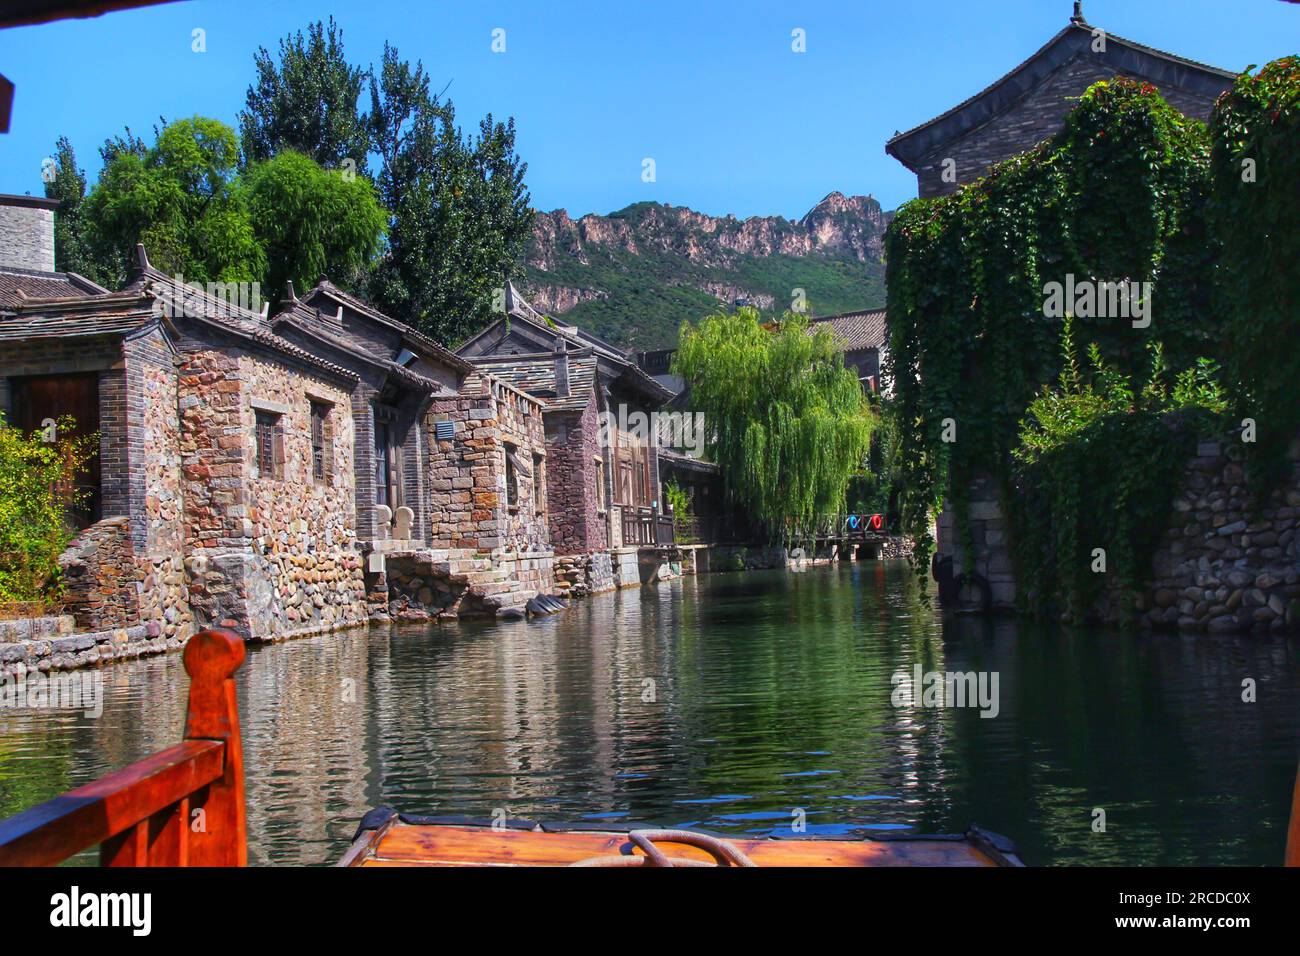 Immergiti nel fascino mozzafiato dello splendido fiume cinese, crogiolandoti nel caldo abbraccio della luce del sole in un ambiente incontaminato all'aperto. Foto Stock